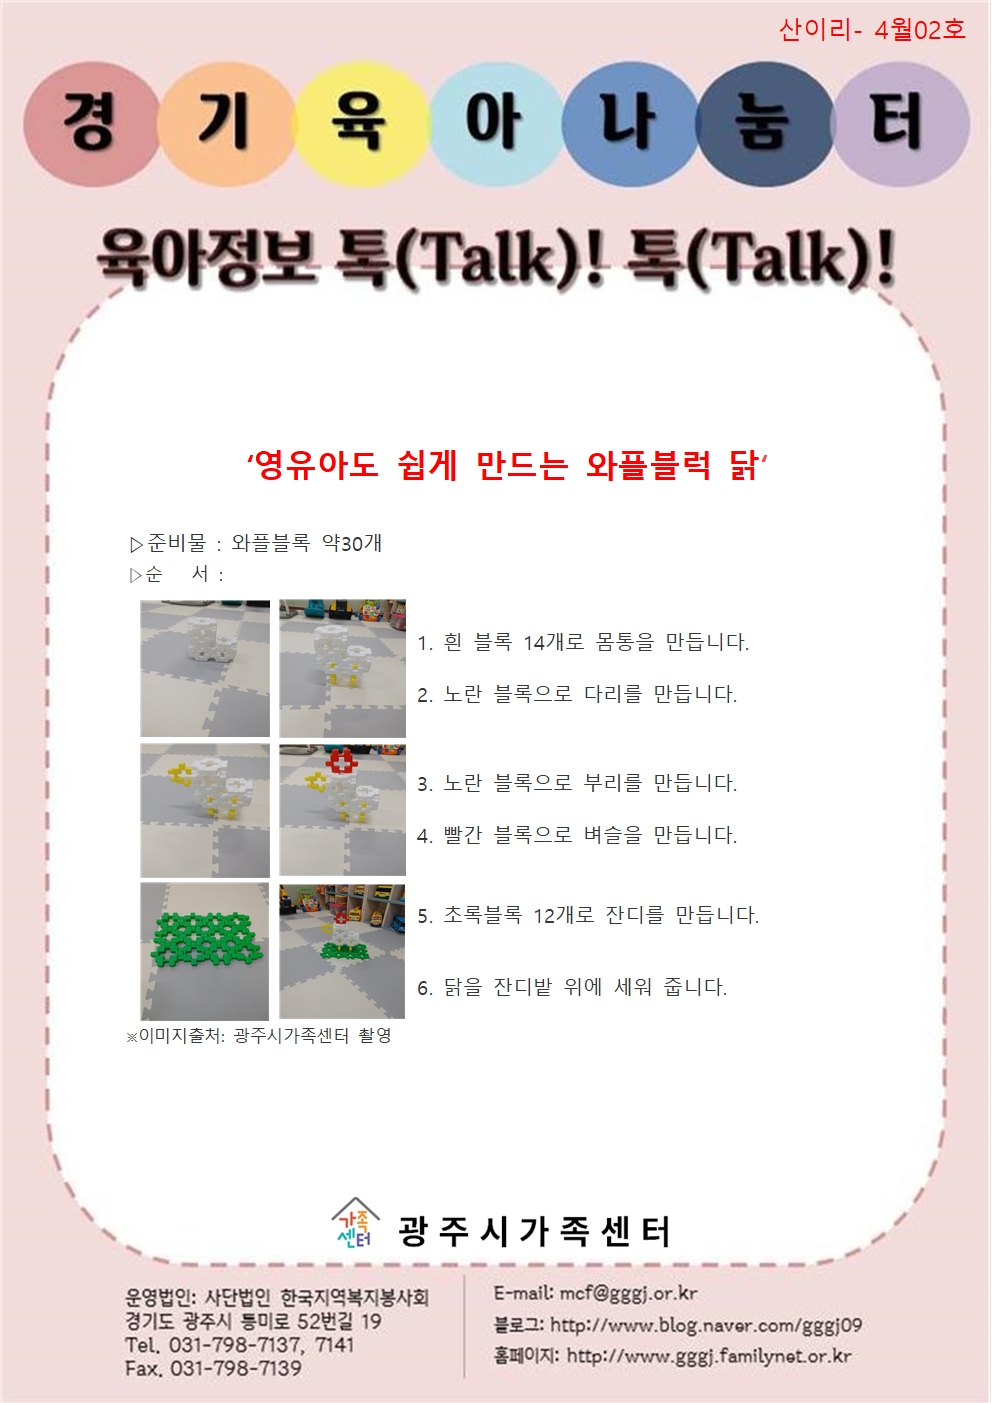 [나눔터 이야기]육아정보 톡(Talk)! 톡(Talk)!-4월 2호